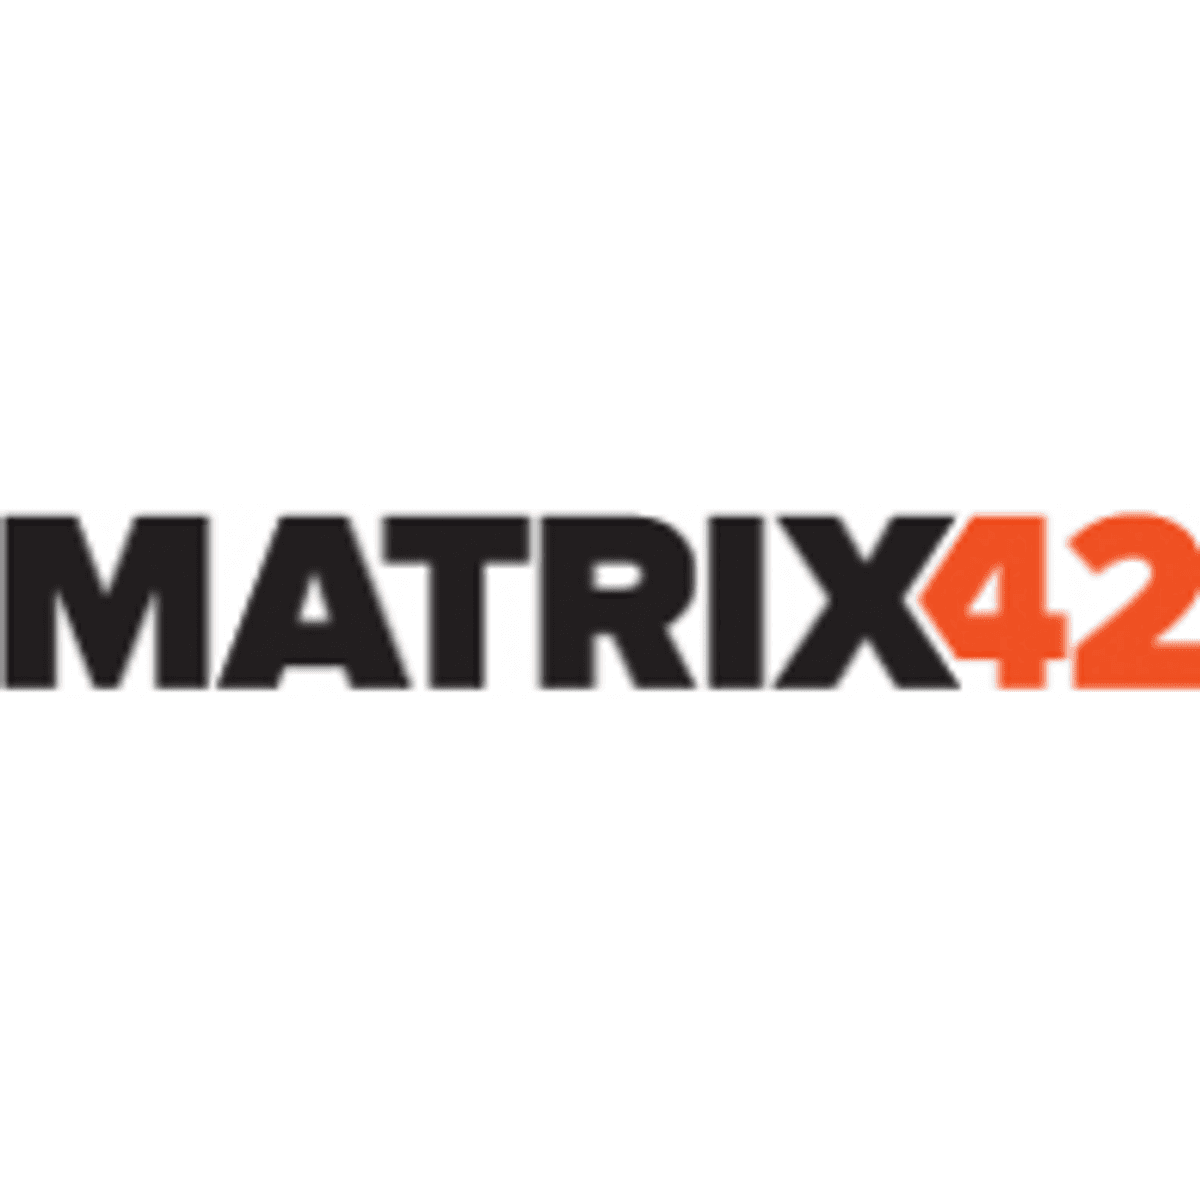 Matrix42 en Complions-GRC realiseren samen Continuous Compliance image